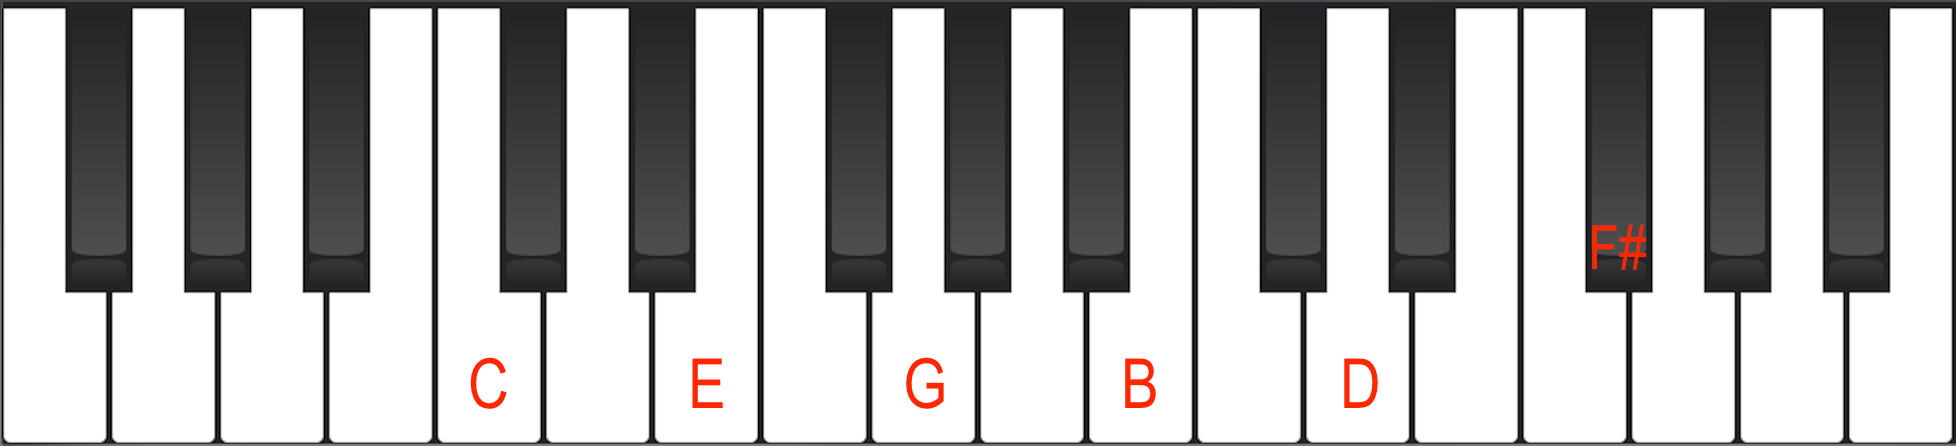 Cmaj7#11 chord on Piano